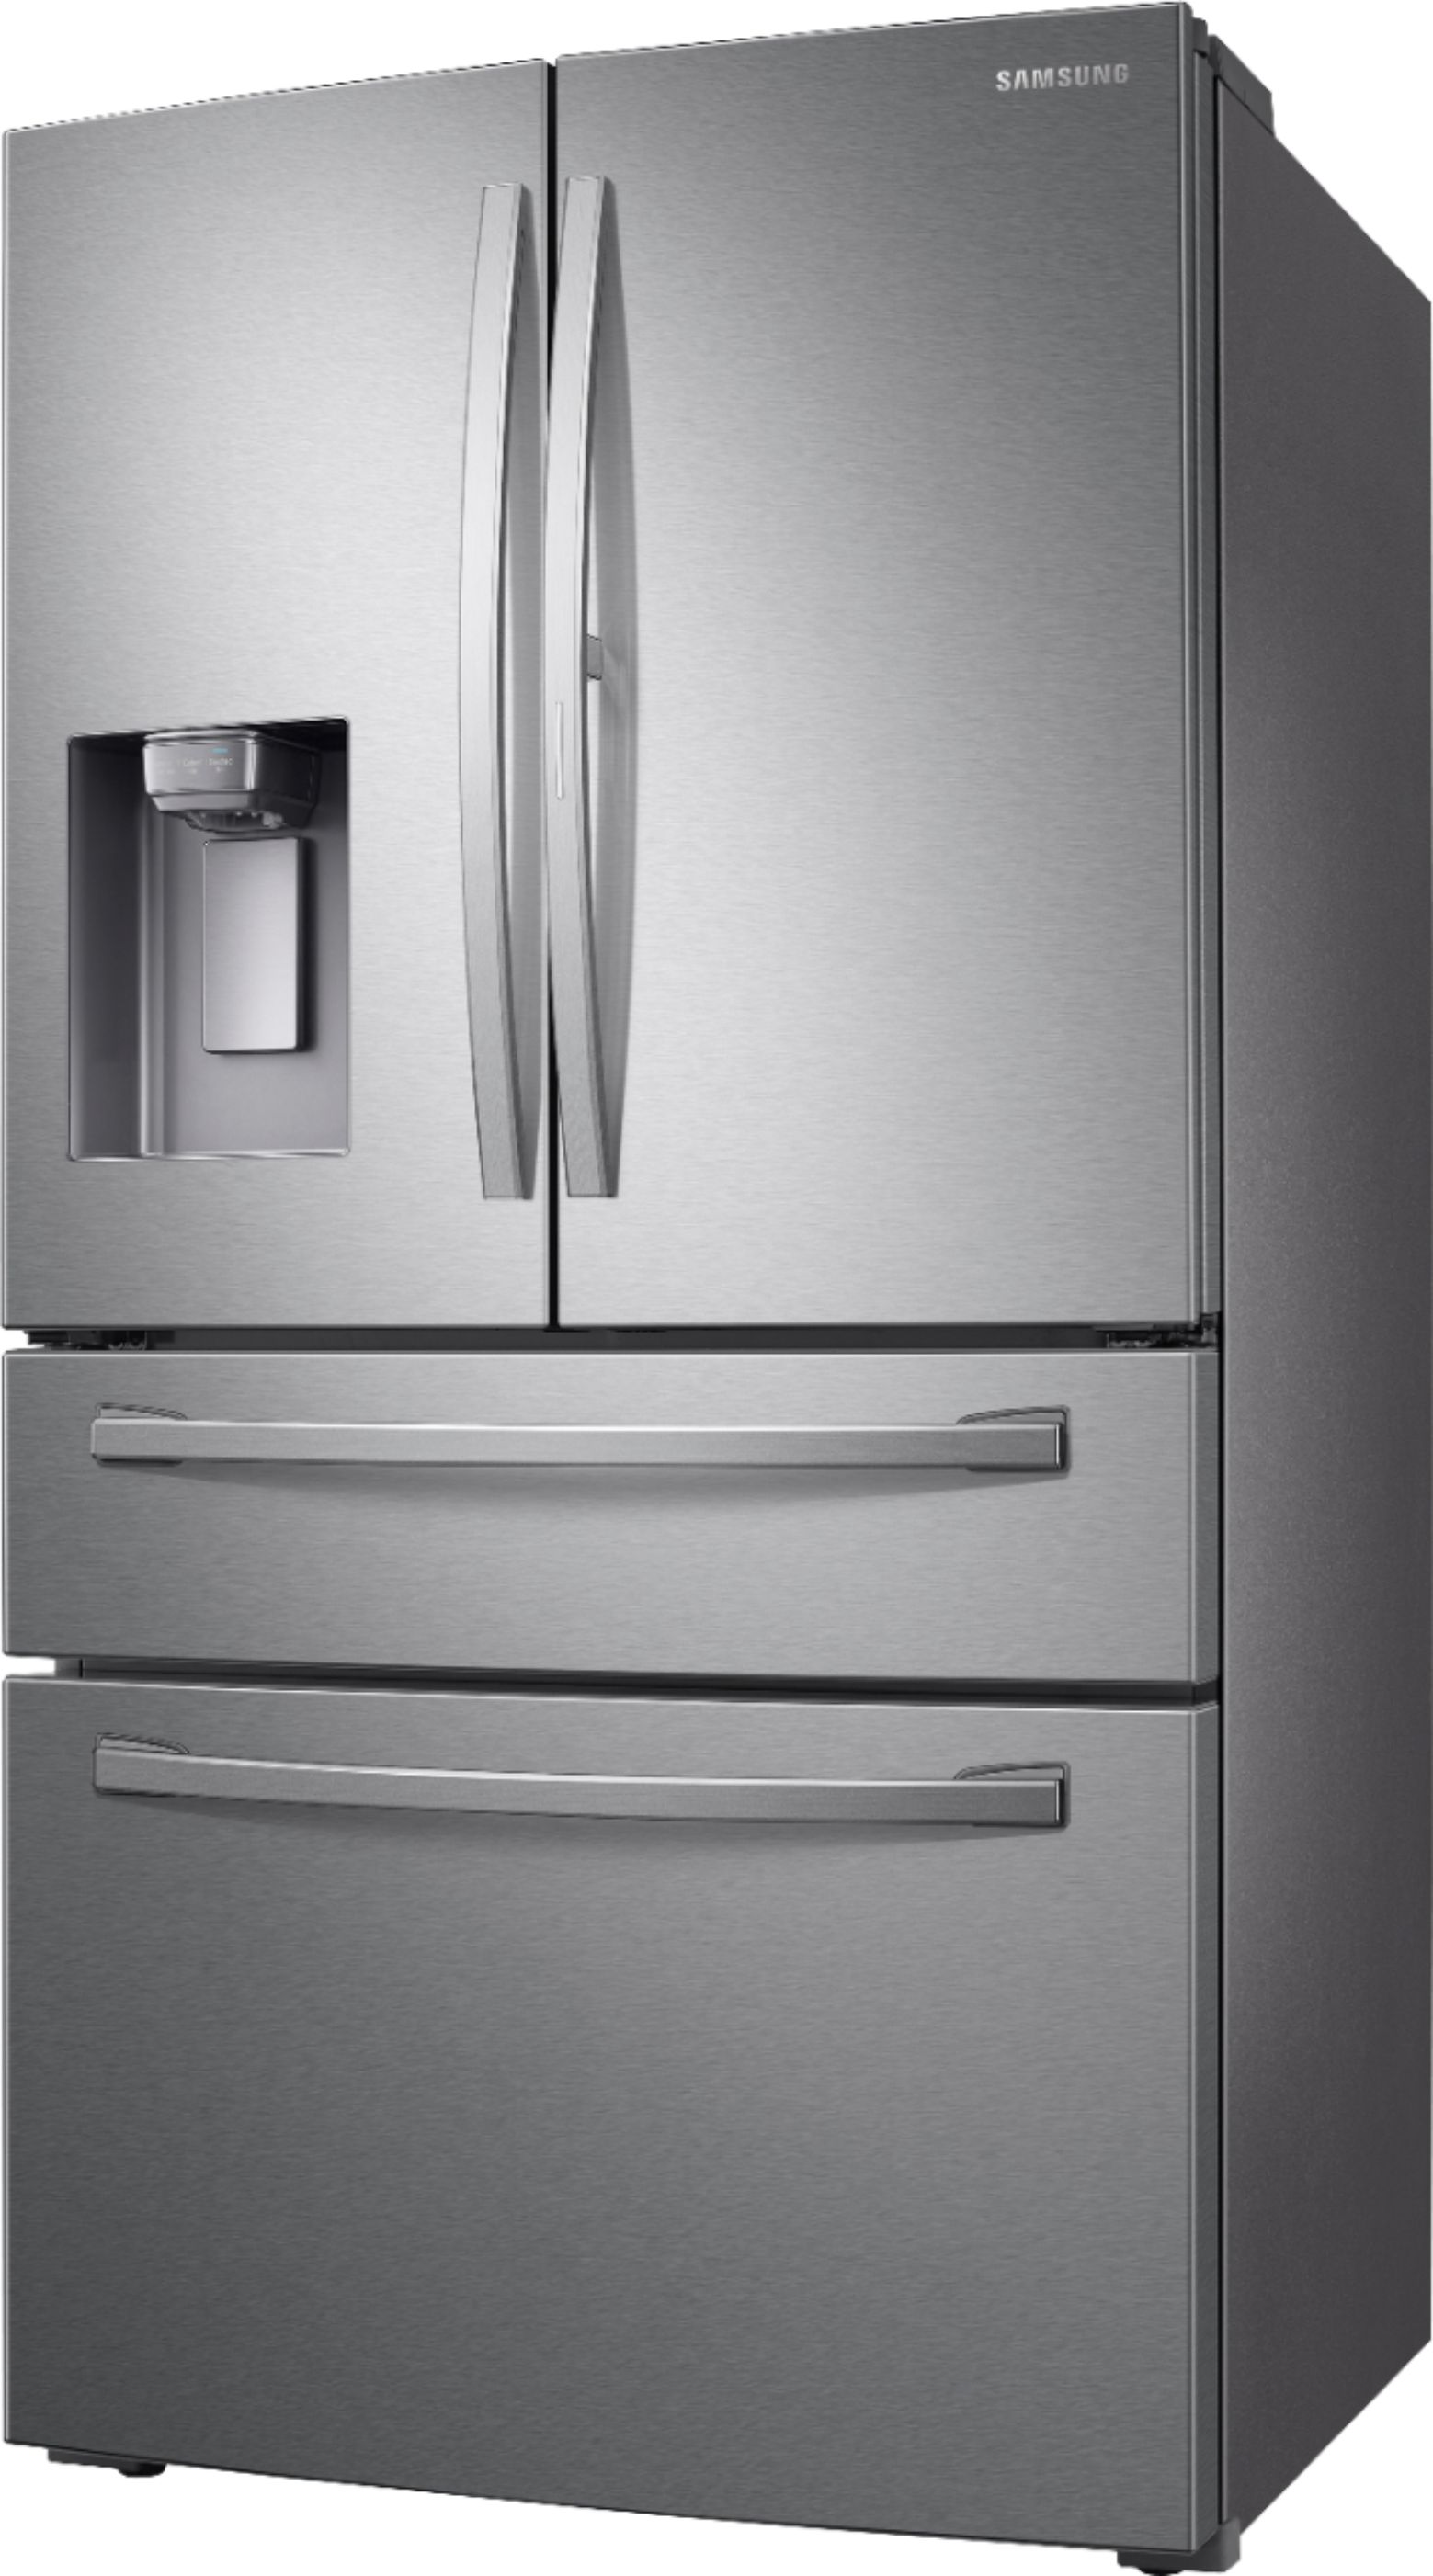 Left View: Samsung - 27.8 cu. ft. 4-Door French Door Smart Refrigerator with Food Showcase - Stainless Steel